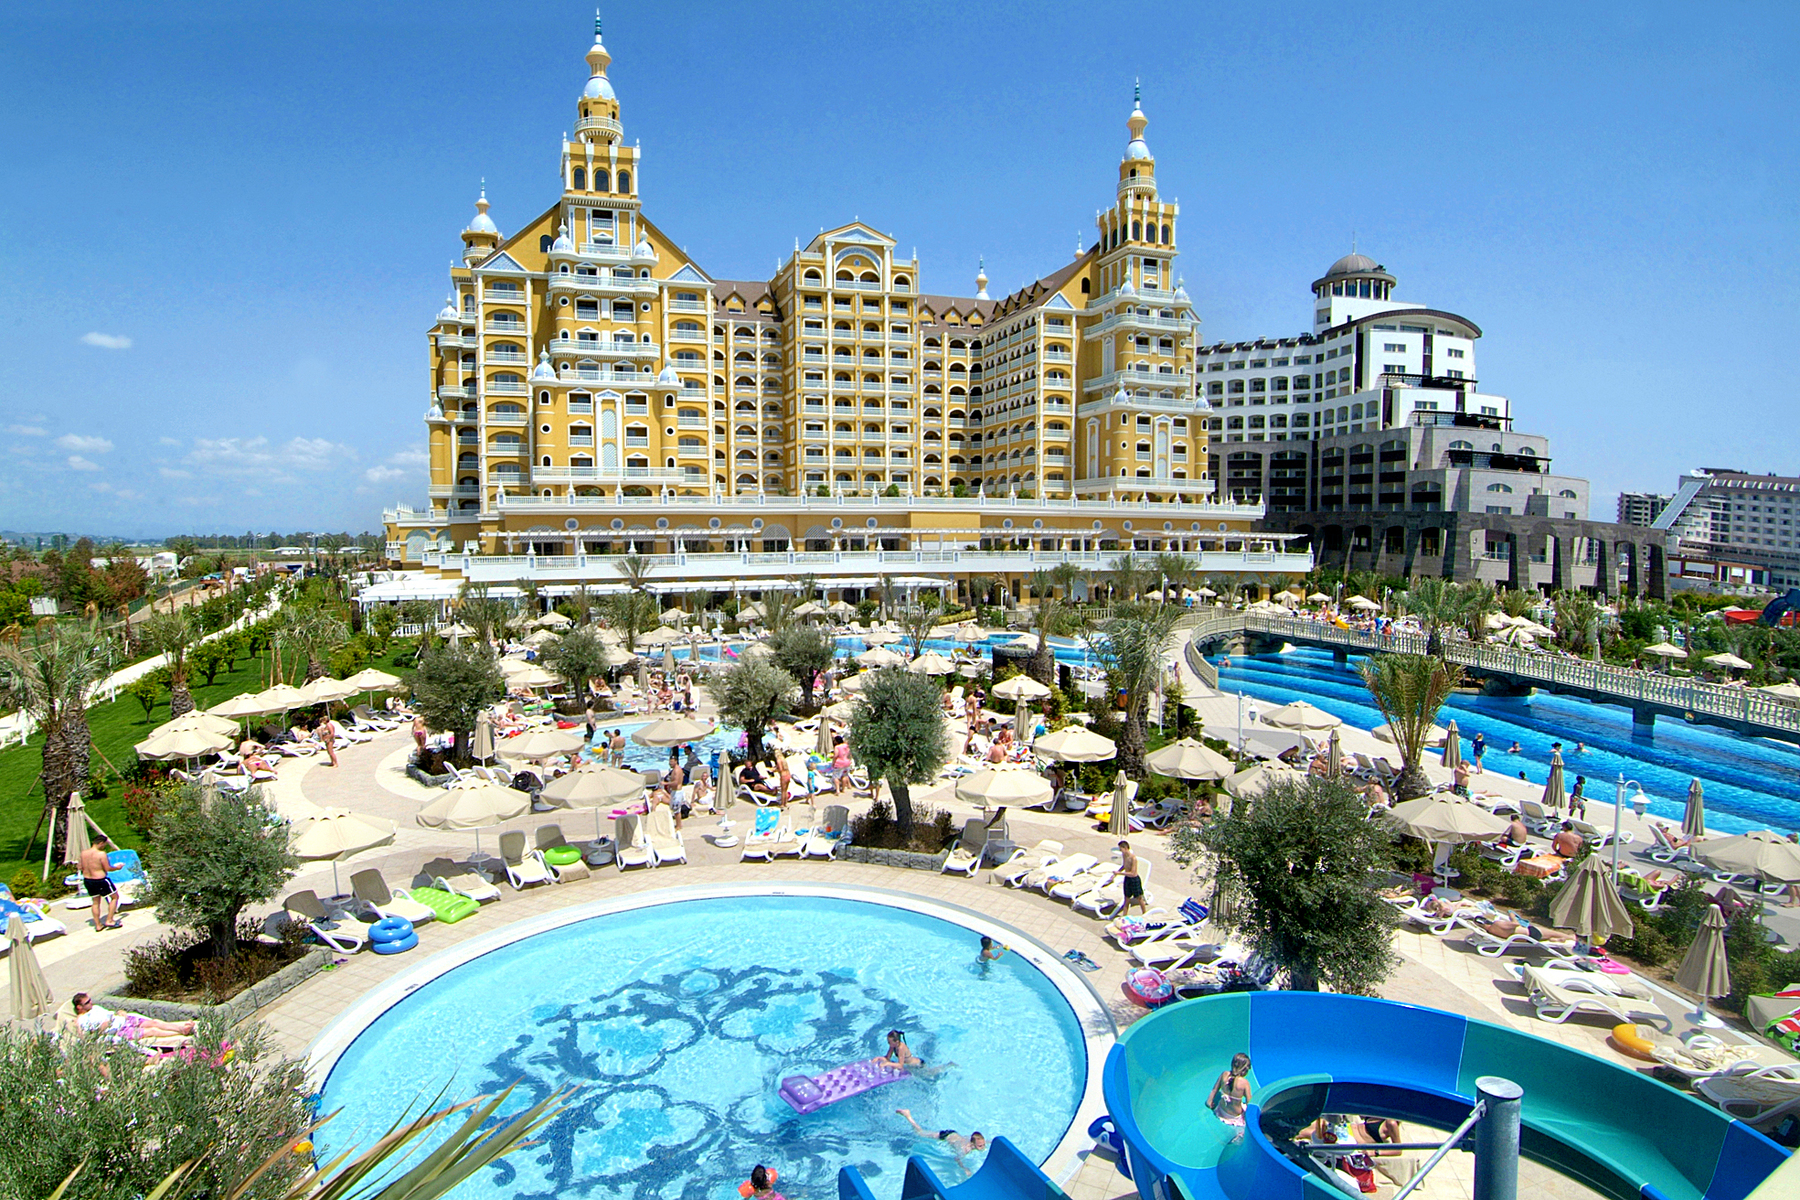 Royal Holiday Palace / Türkei - Lara / pool